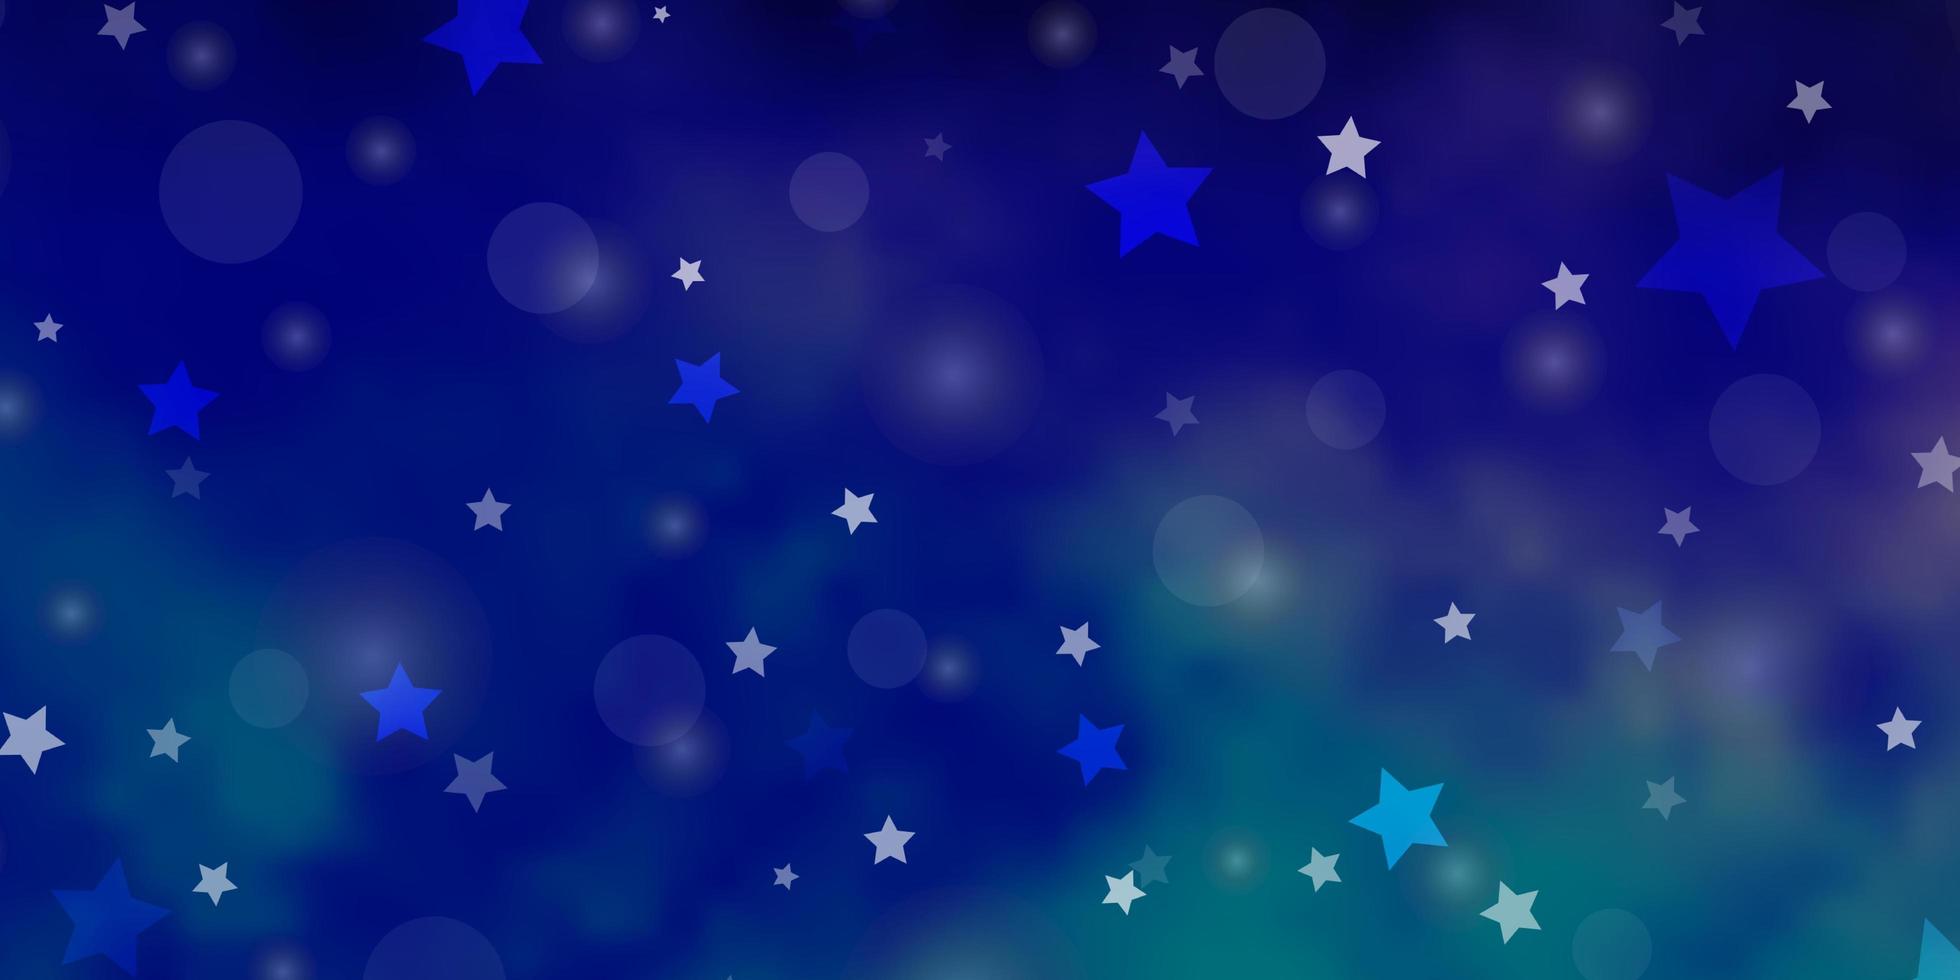 mörkrosa, blå vektorbakgrund med cirklar, stjärnor. vektor